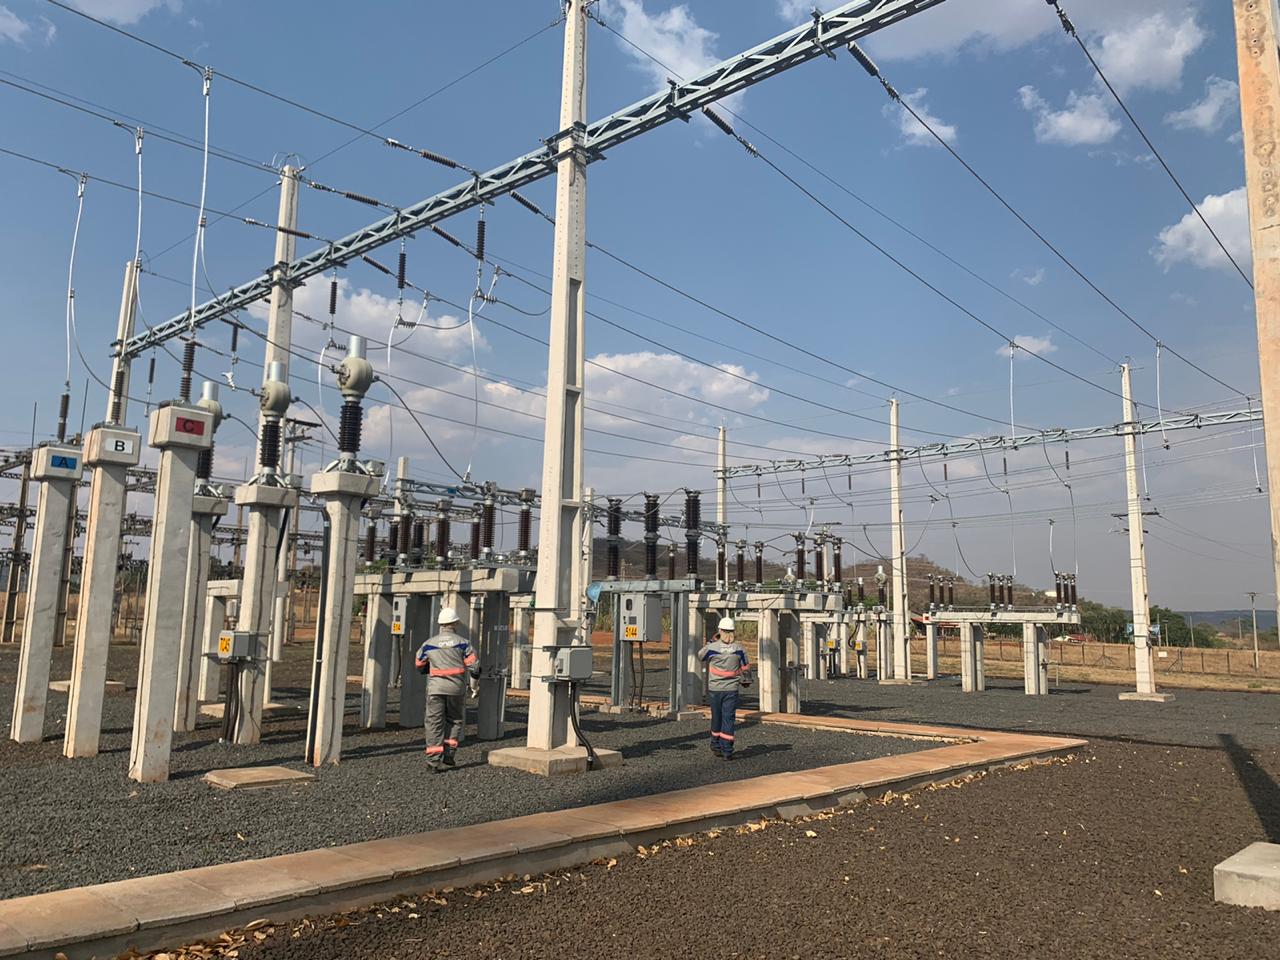 Enel Distribuição Goiás realiza operação Energia Legal Enel em Caldas Novas  - Portal Serra Dourada News